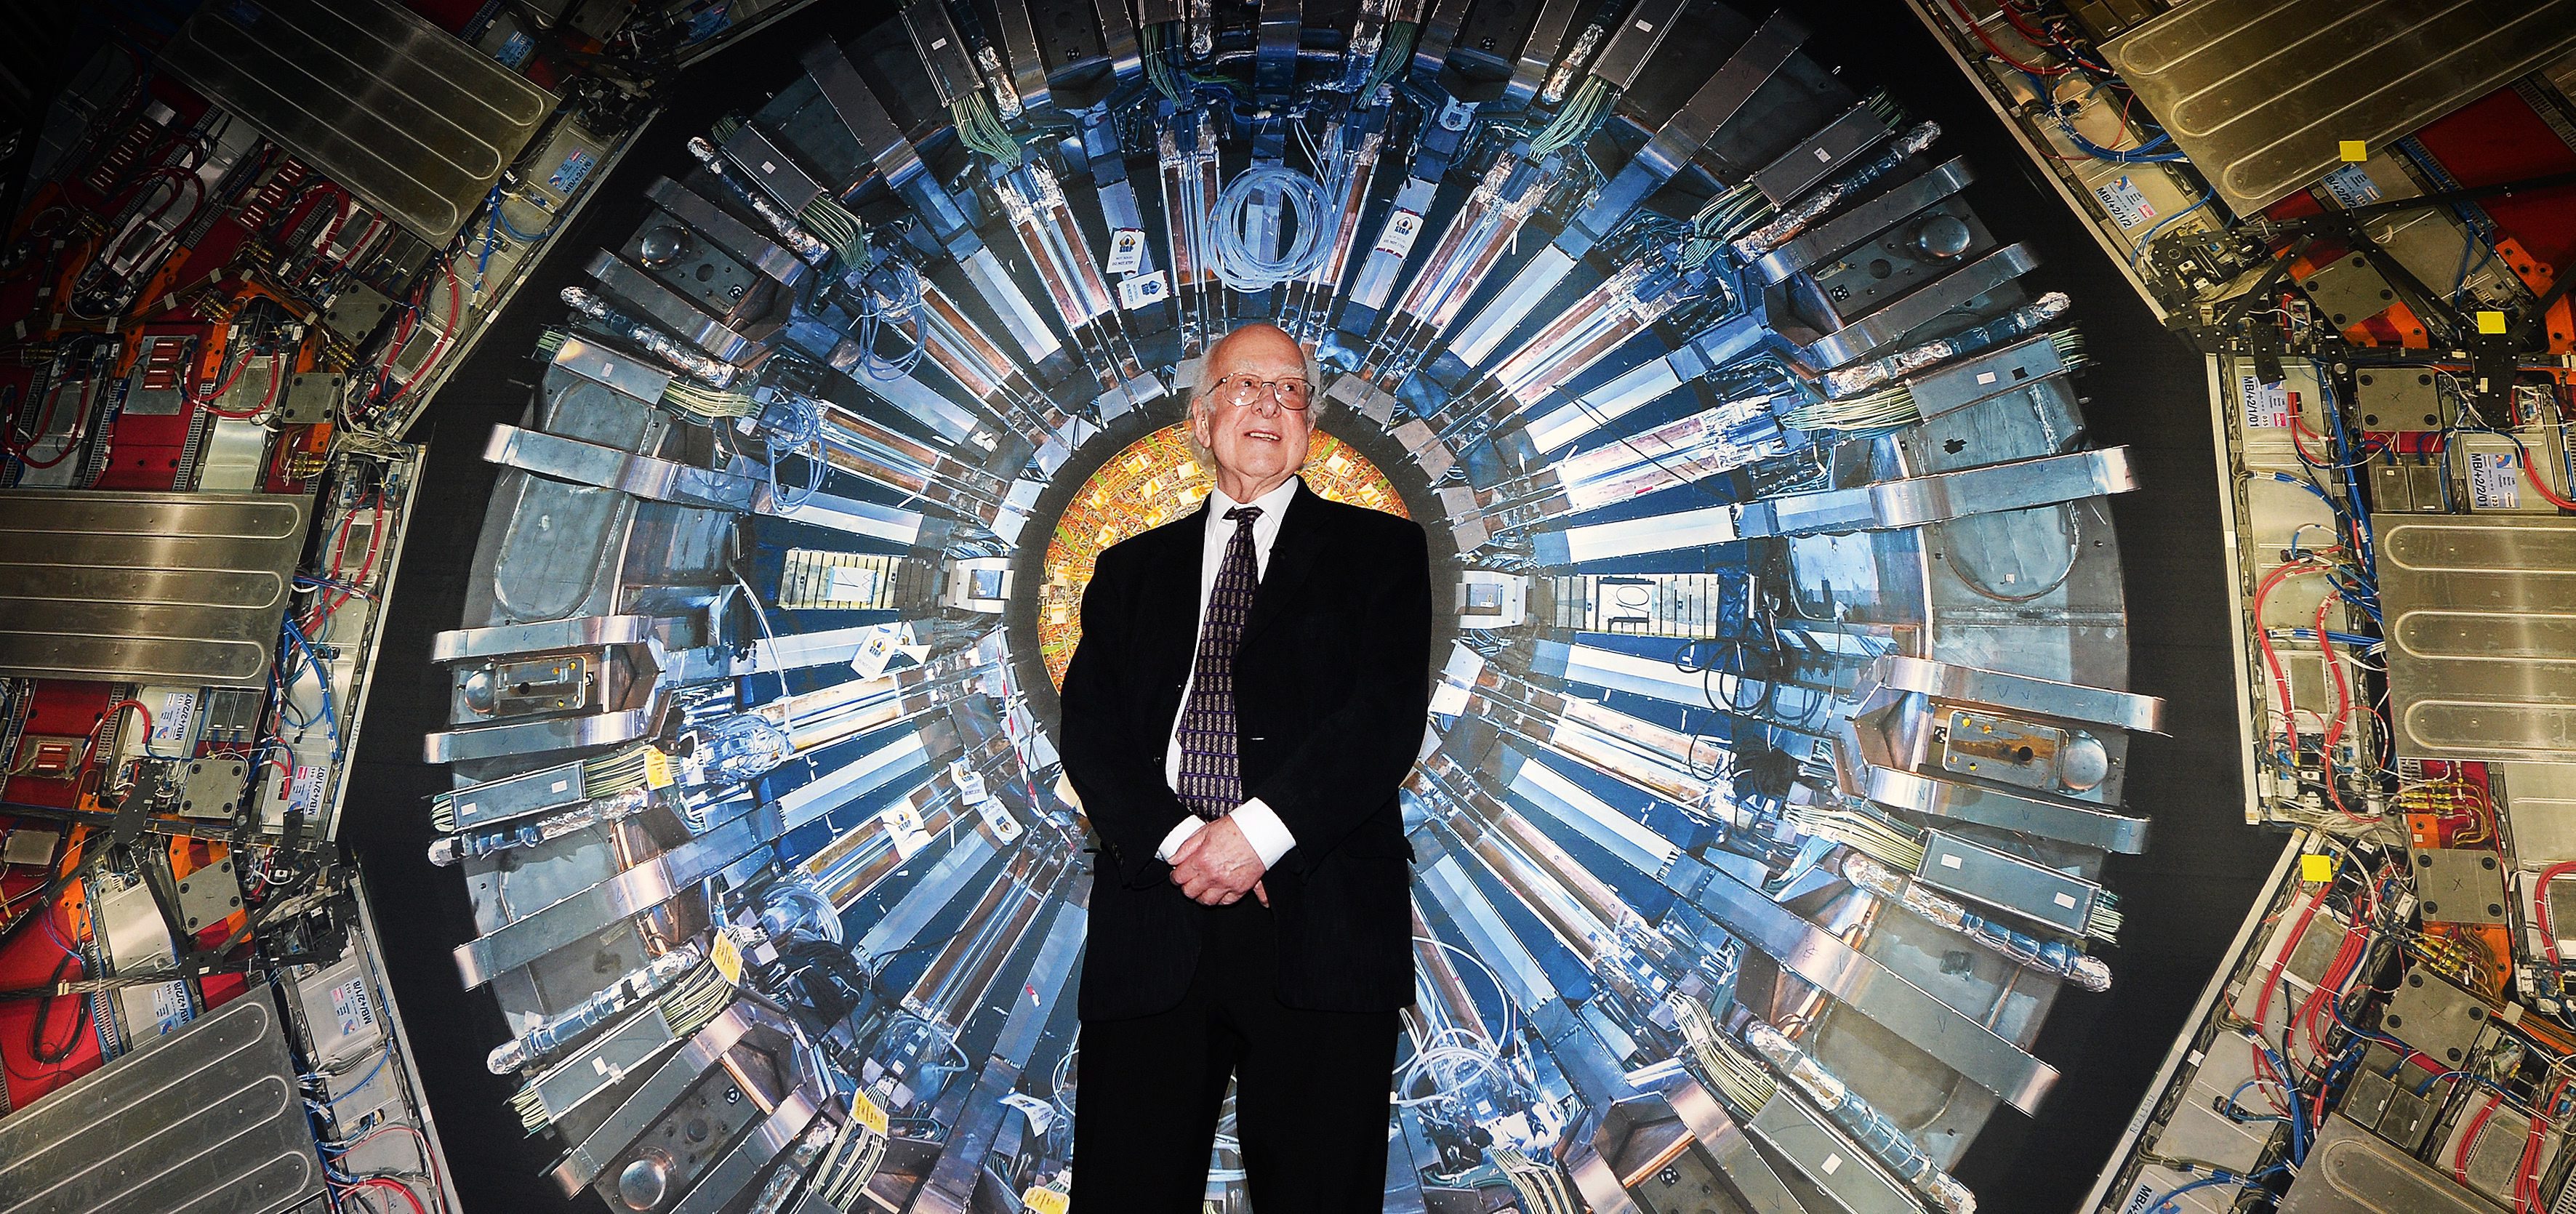 Nobel laureate Peter Higgs opens hadron collider exhibit at science museum in london.